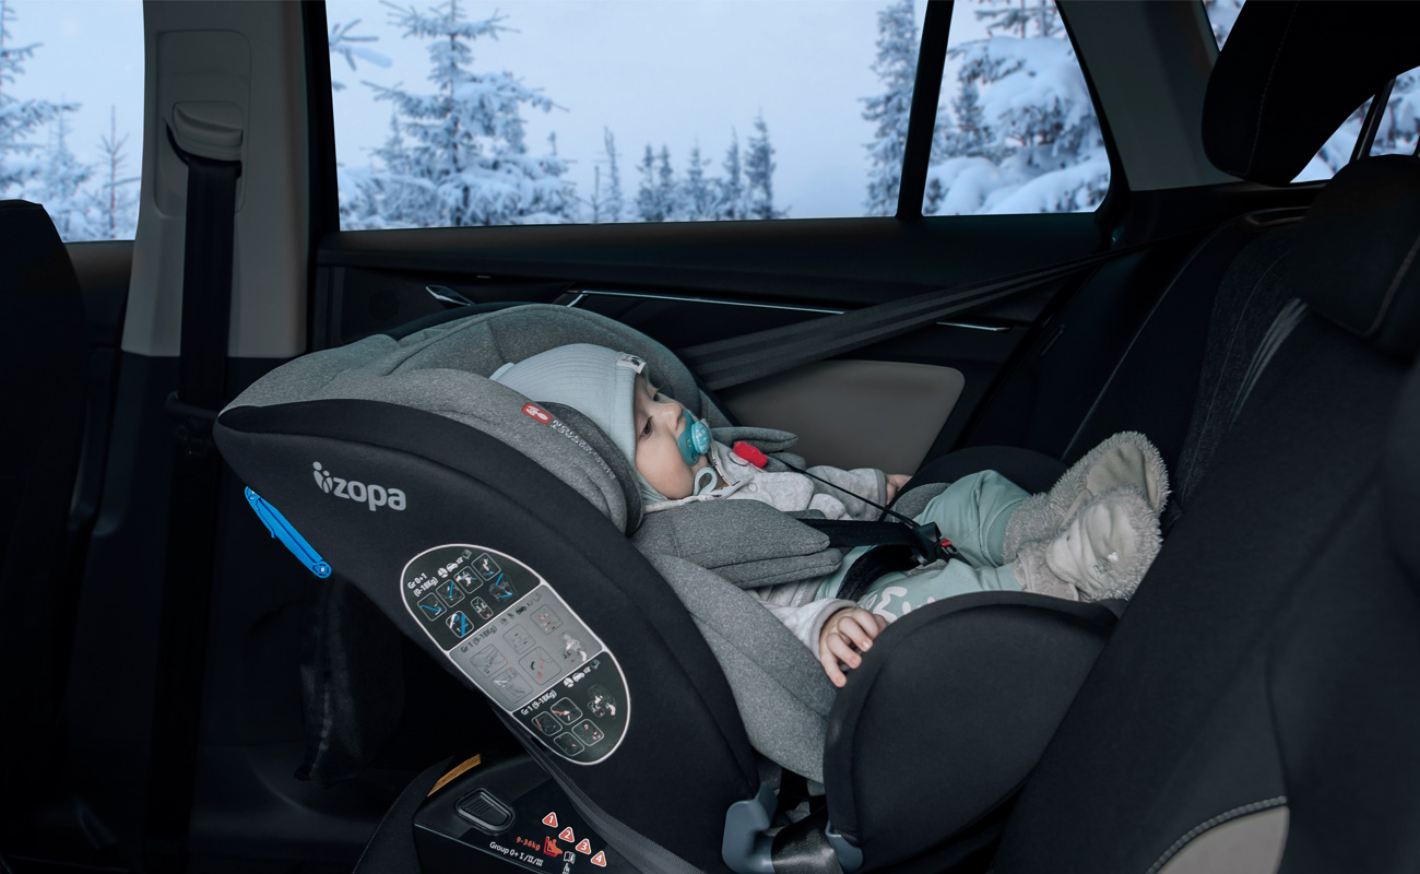 Dítě v zimní bundě do autosedačky nepatří! Jak zajistit bezpečné cestování v zimě?